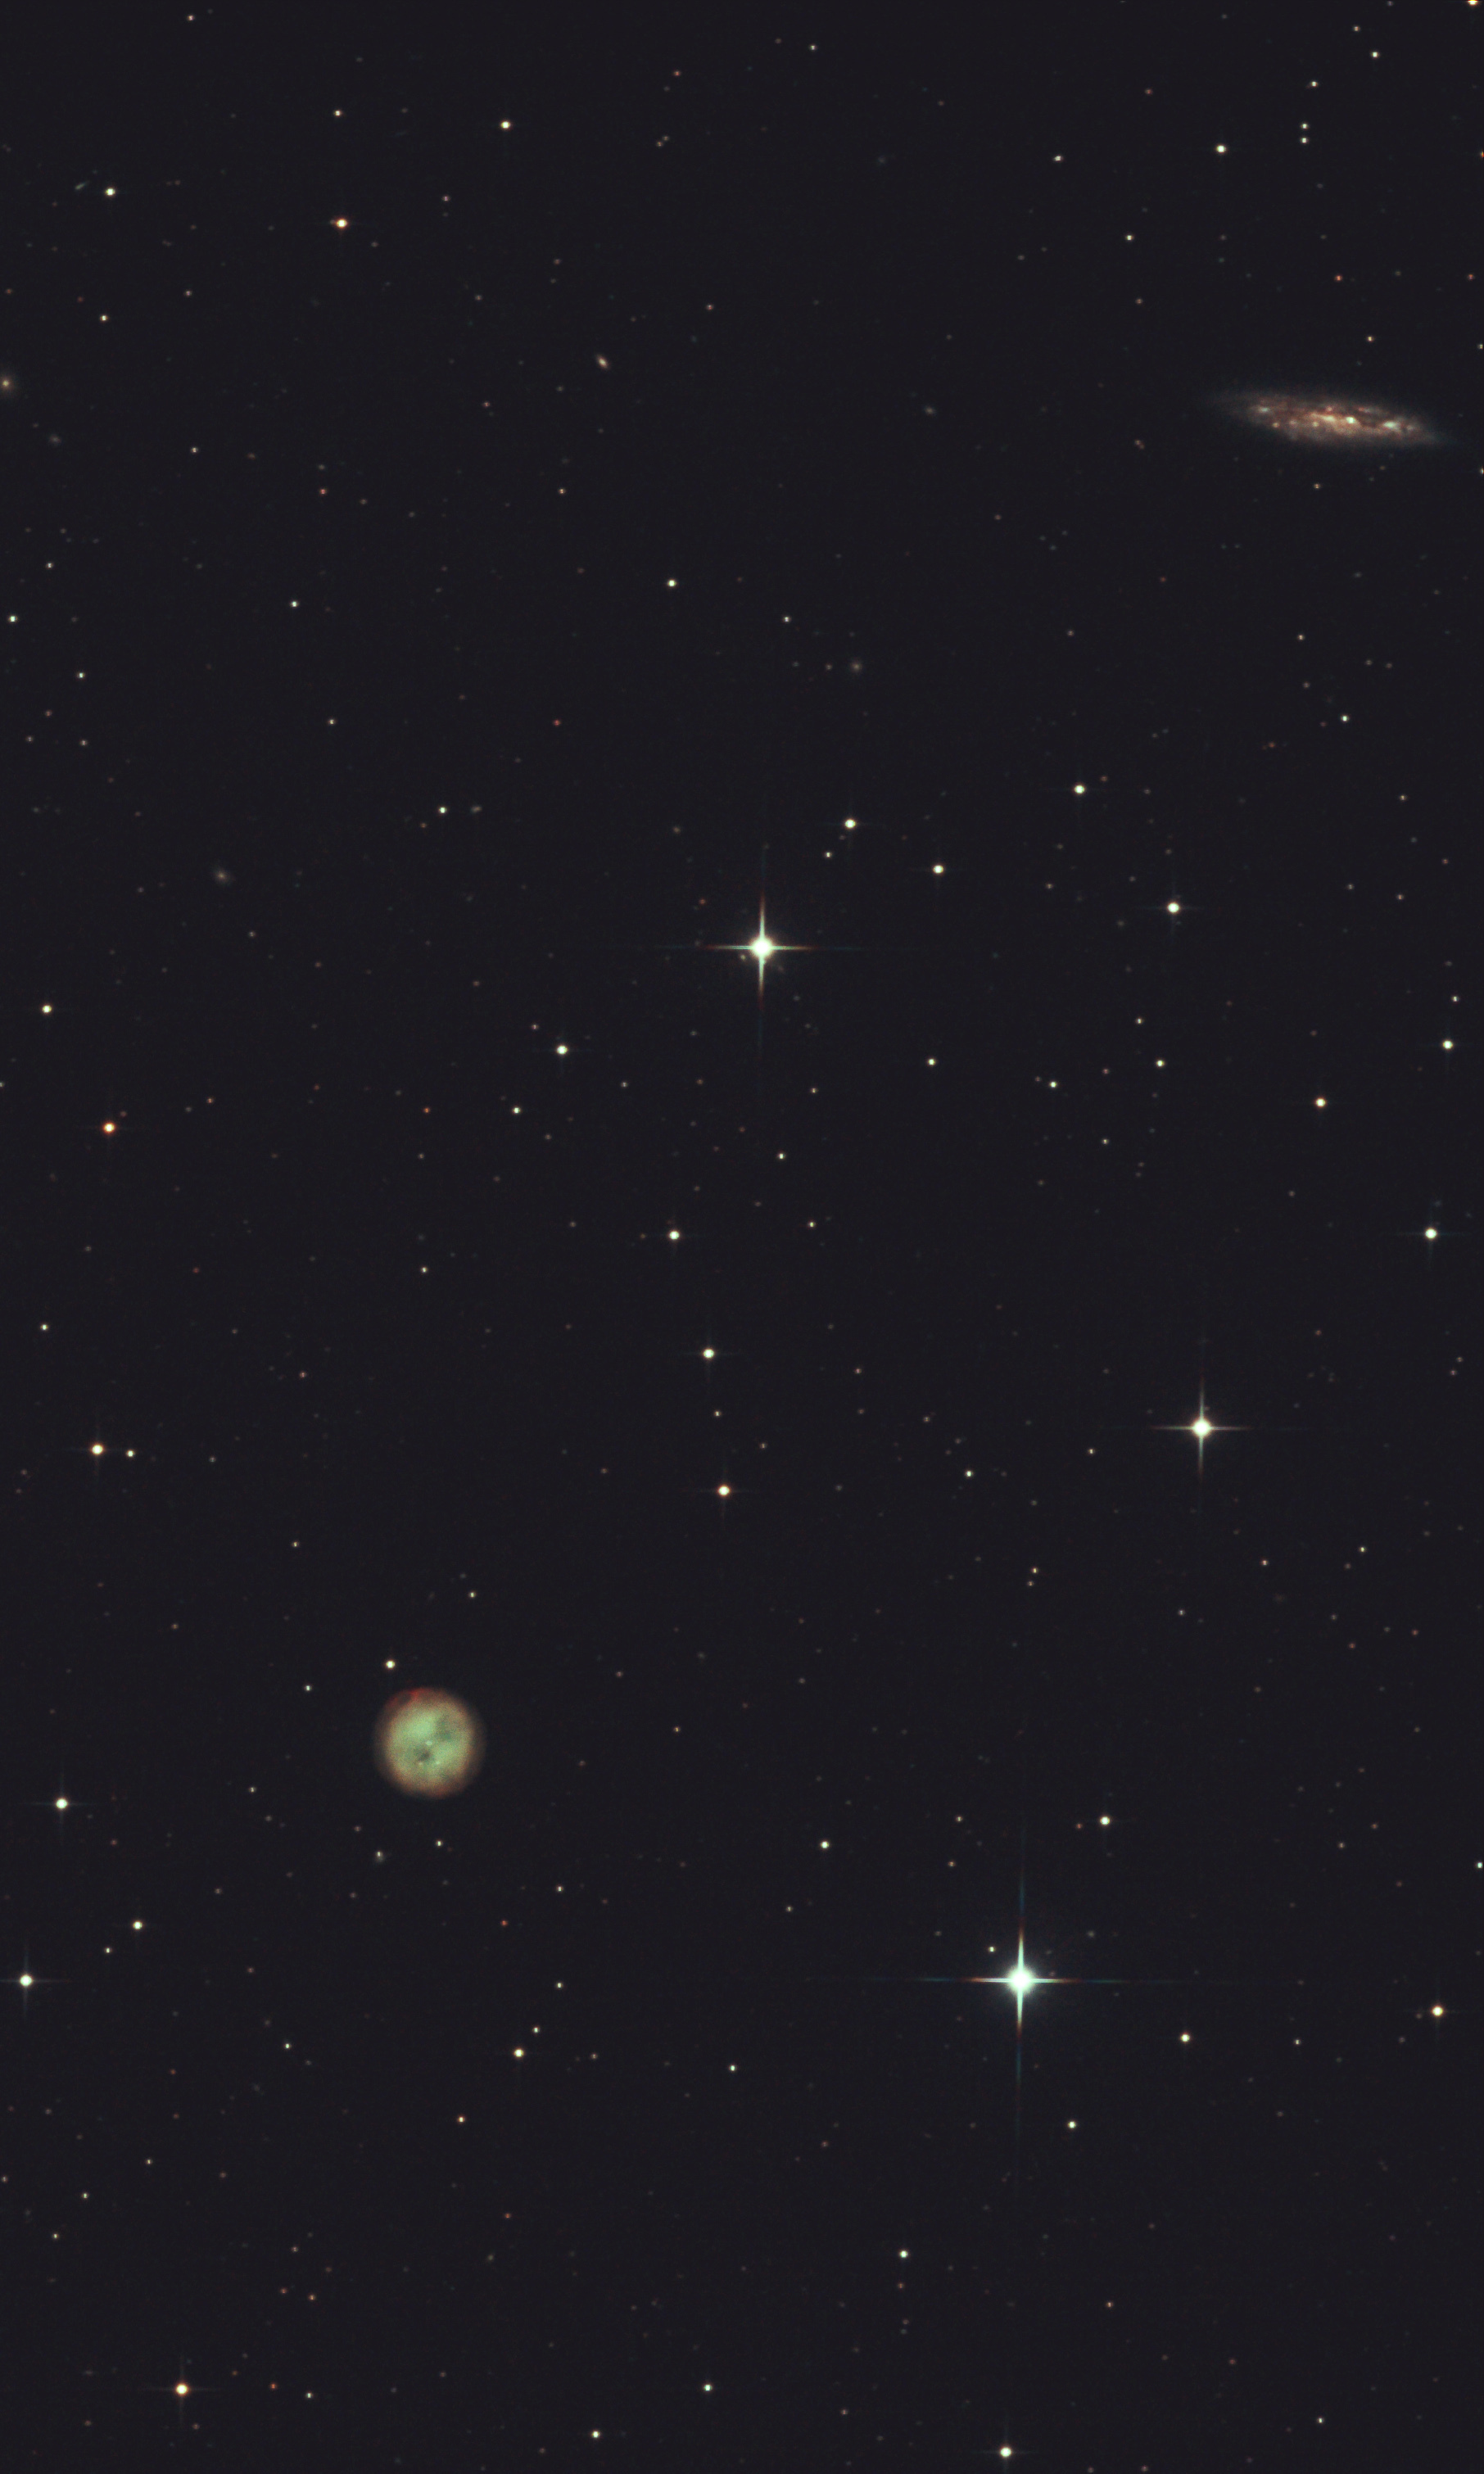 M 97 et M 108   Nébuleuse planétaire "le hibou" et galaxie. Constellation de la grande ourse